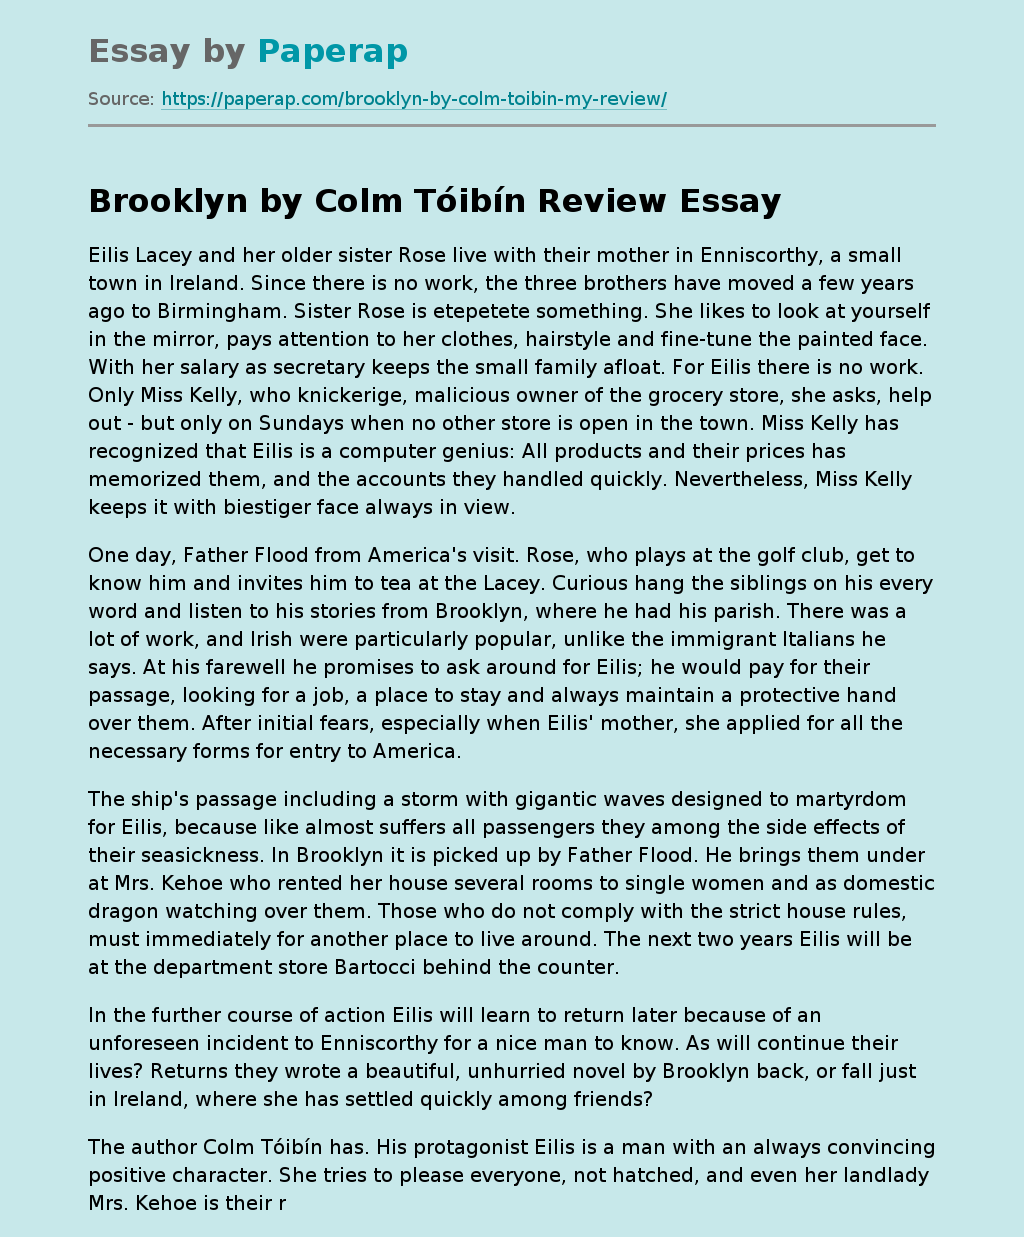 Brooklyn by Colm Tóibín Review